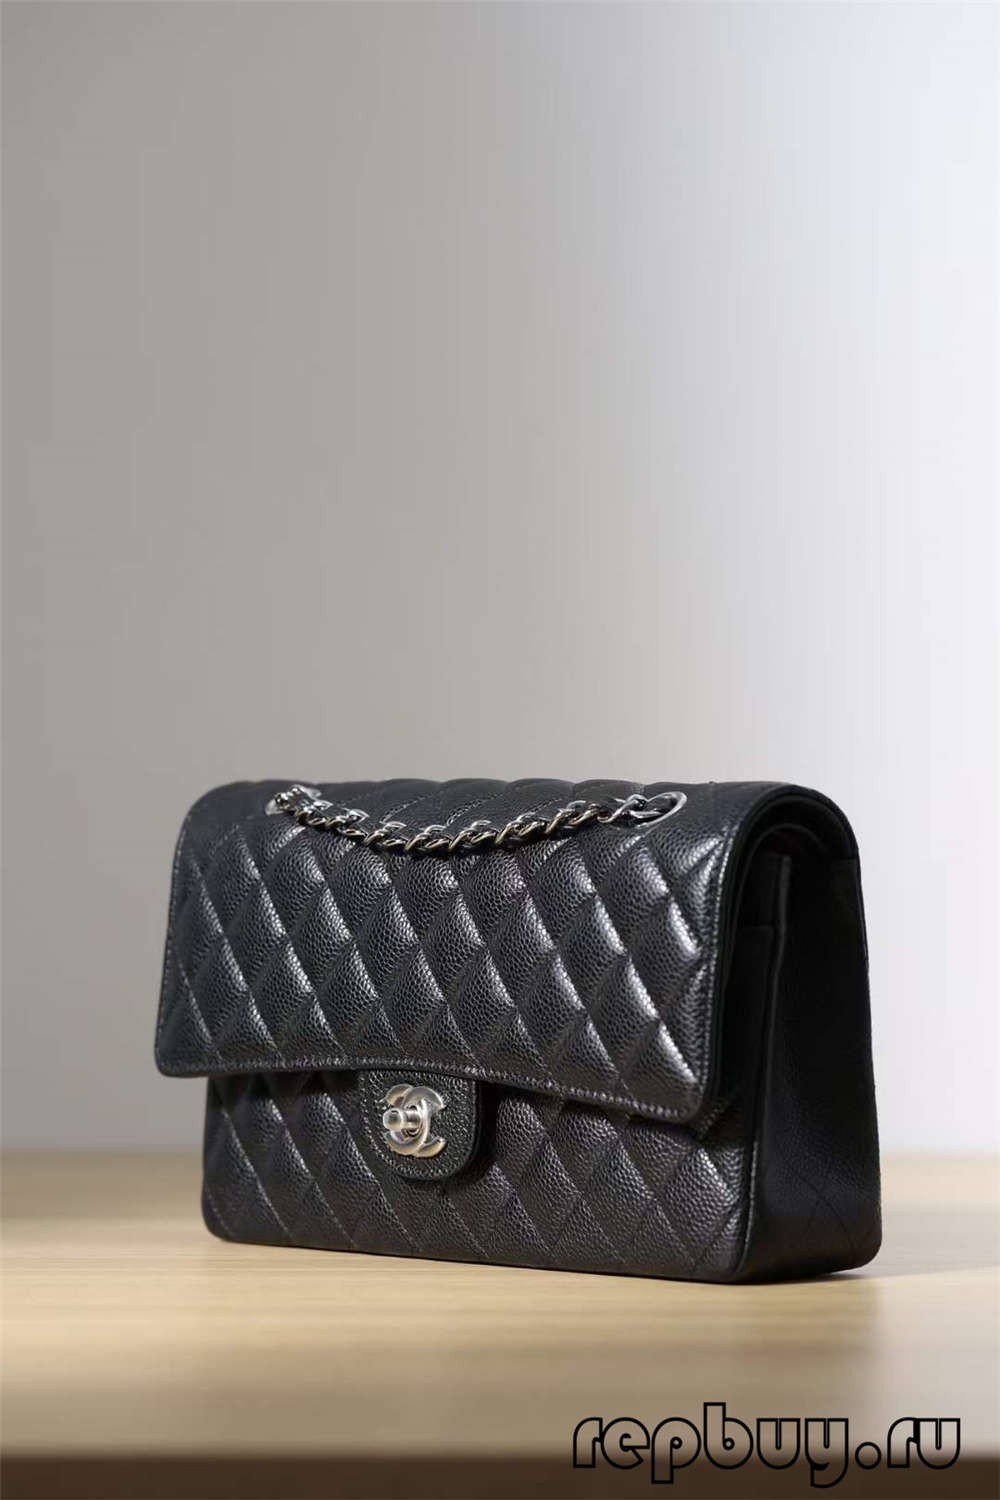 Жинхэнэ арьсаар хийсэн хамгийн шилдэг хуурамч Chanel түрийвч!! Chanel Classic Flap Replica-Хамгийн сайн чанарын хуурамч Louis Vuitton цүнх онлайн дэлгүүр, Replica дизайнер цүнх ru